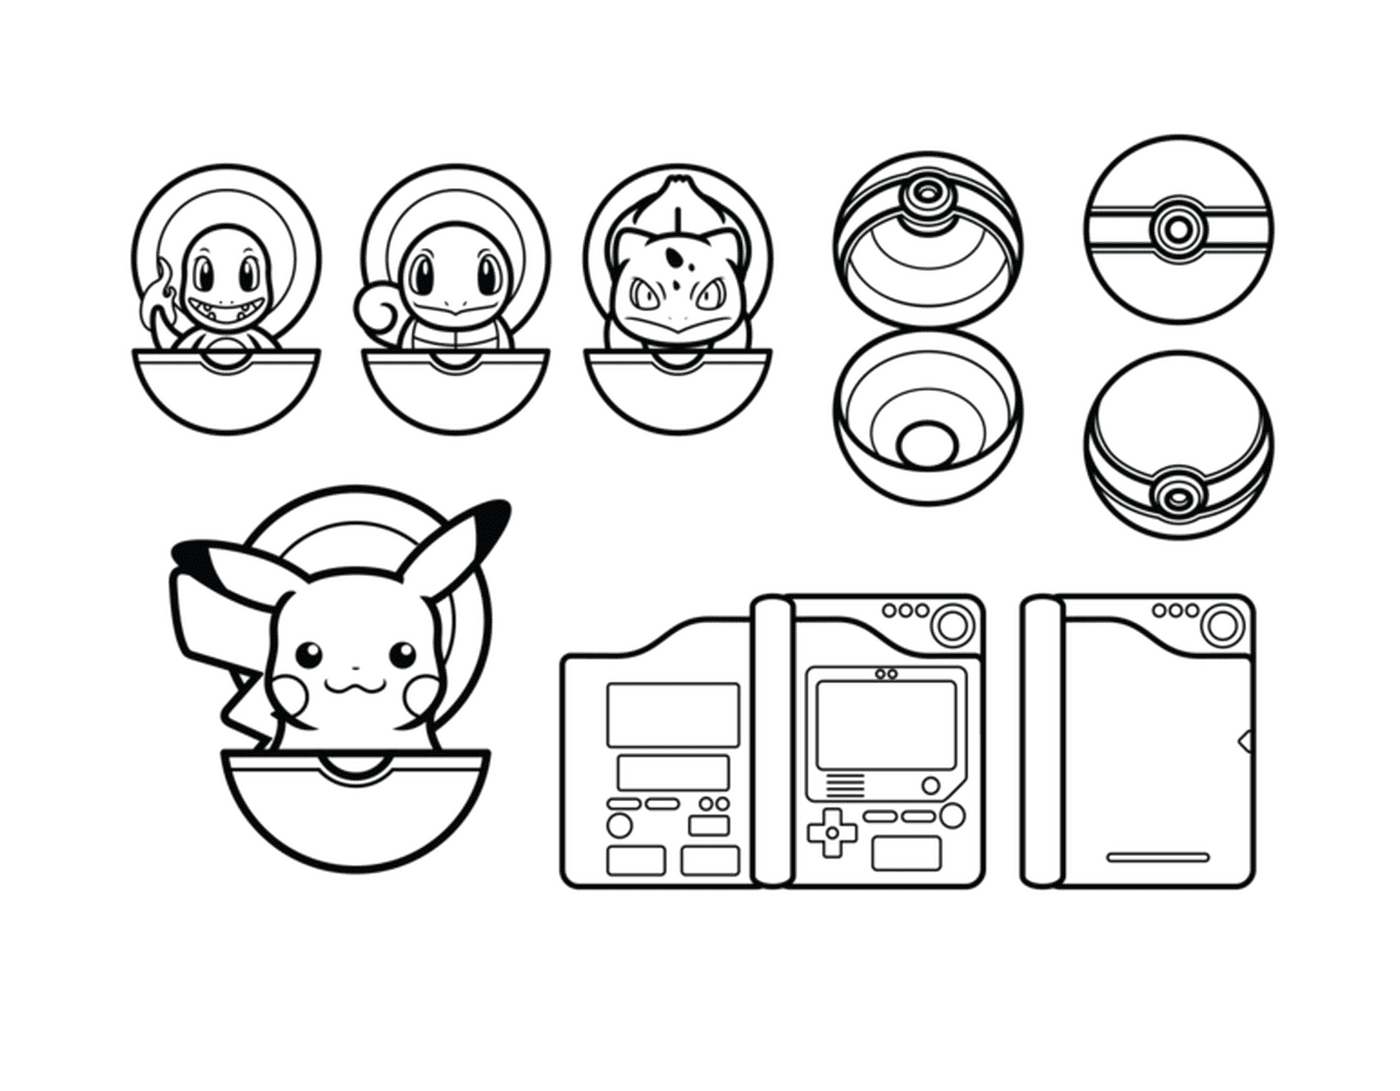  Pikachu y Pokéball, diversidad de ilustraciones cautivadoras 